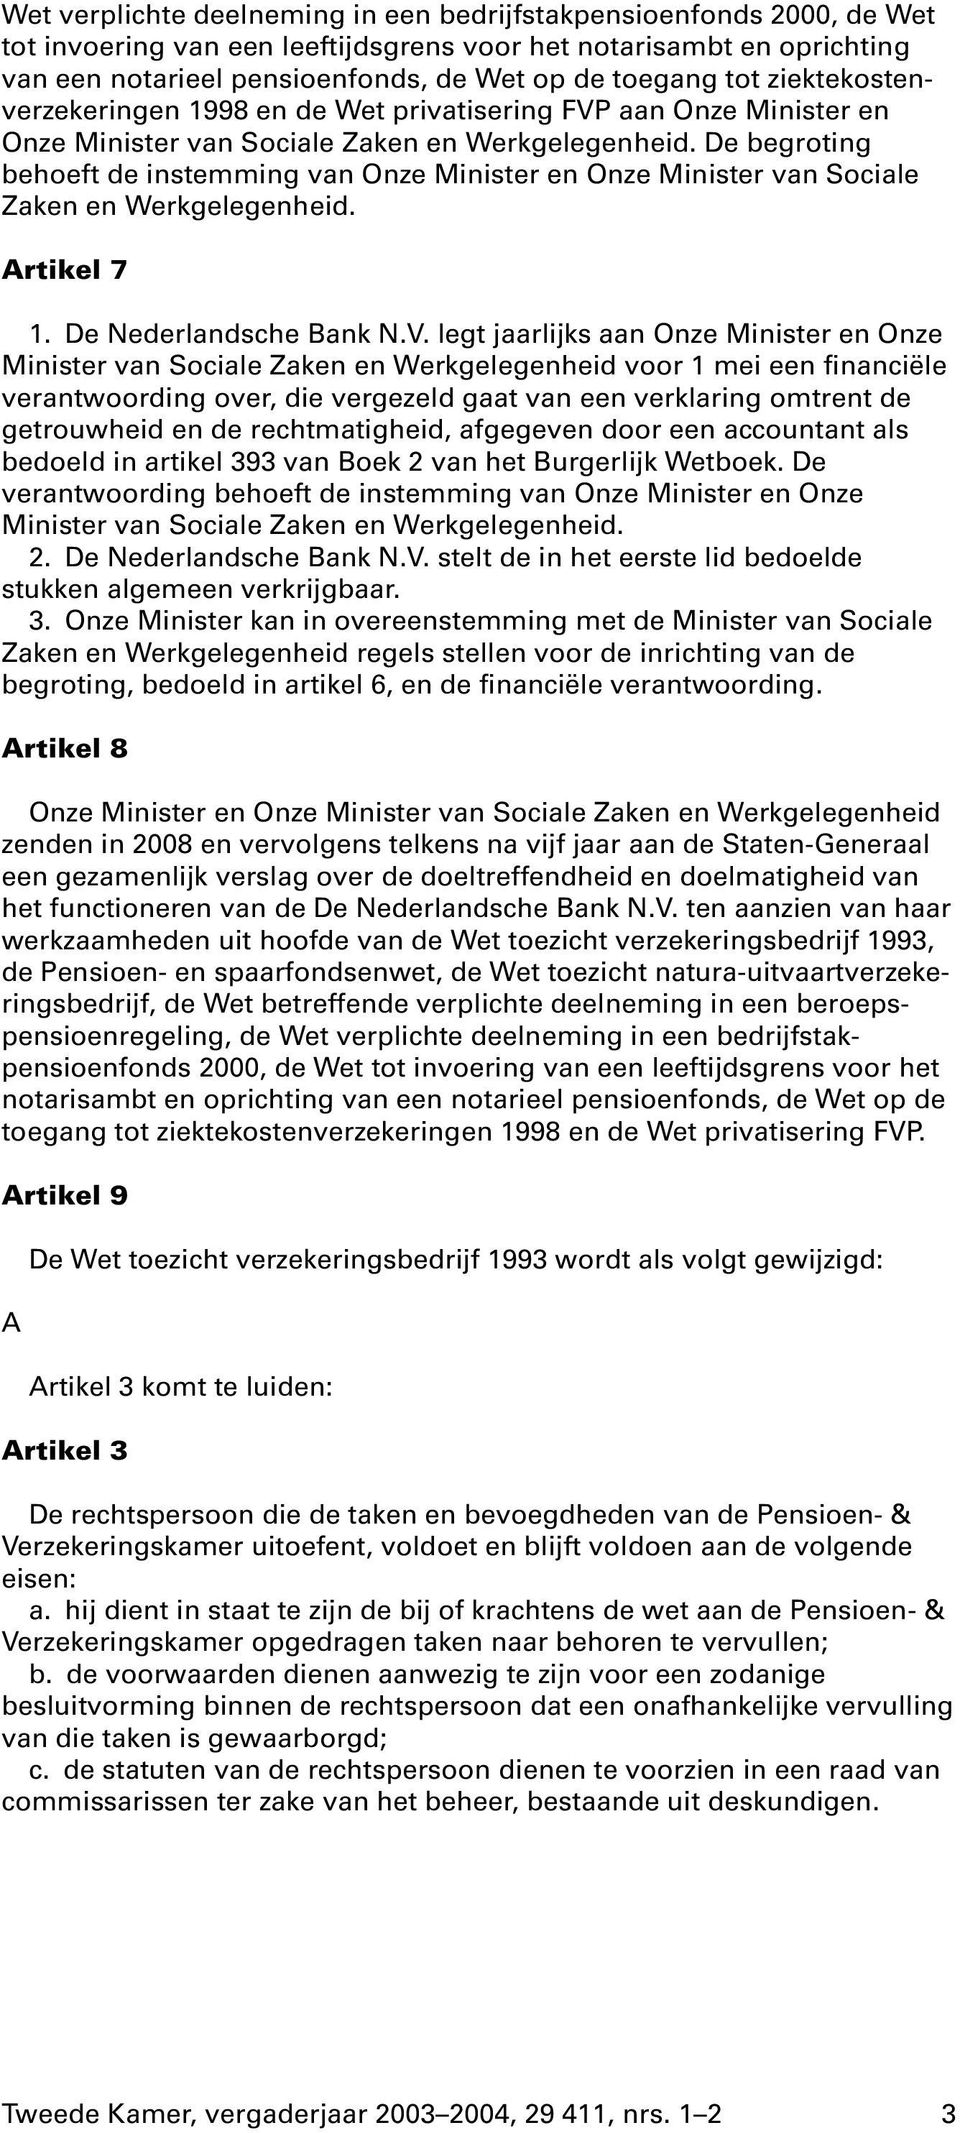 De begroting behoeft de instemming van Onze Minister en Onze Minister van Sociale Zaken en Werkgelegenheid. Artikel 7 1. De Nederlandsche Bank N.V.